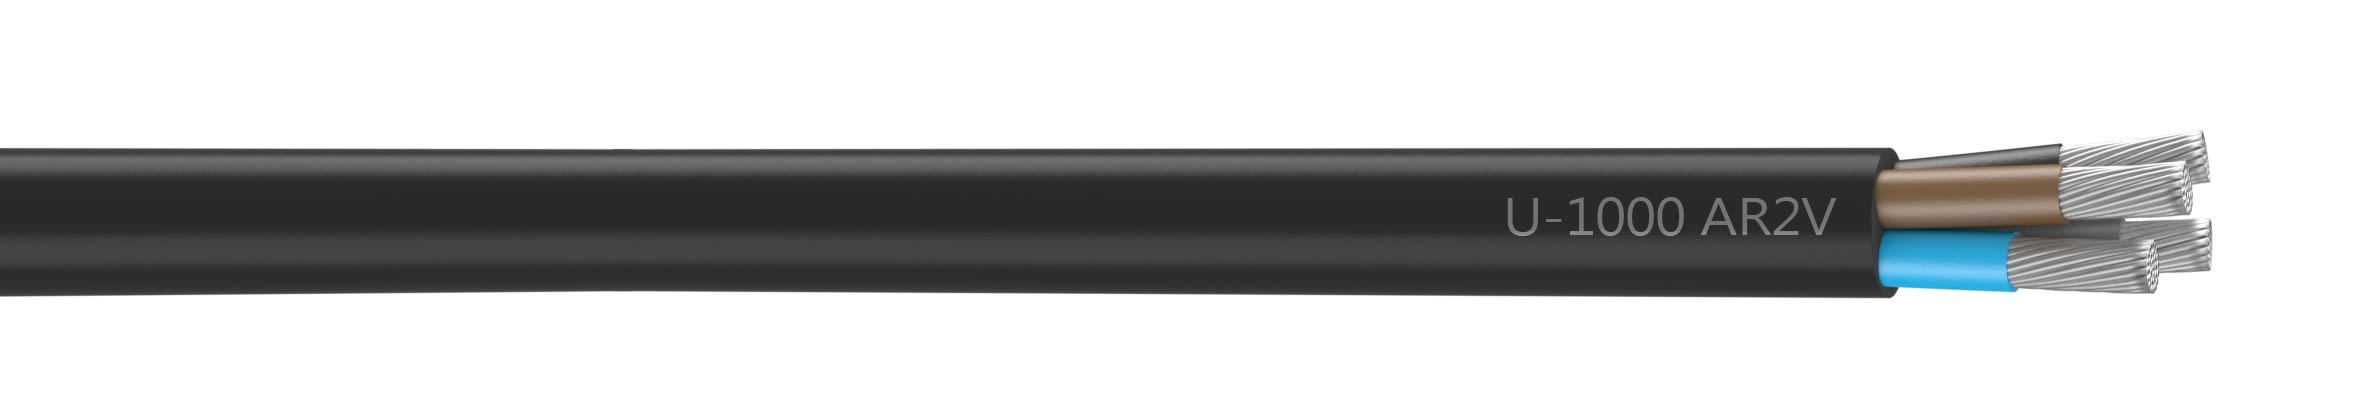 Nexans - Cable rigide U-1000 AR2V aluminium 4x150 longueur a la coupe